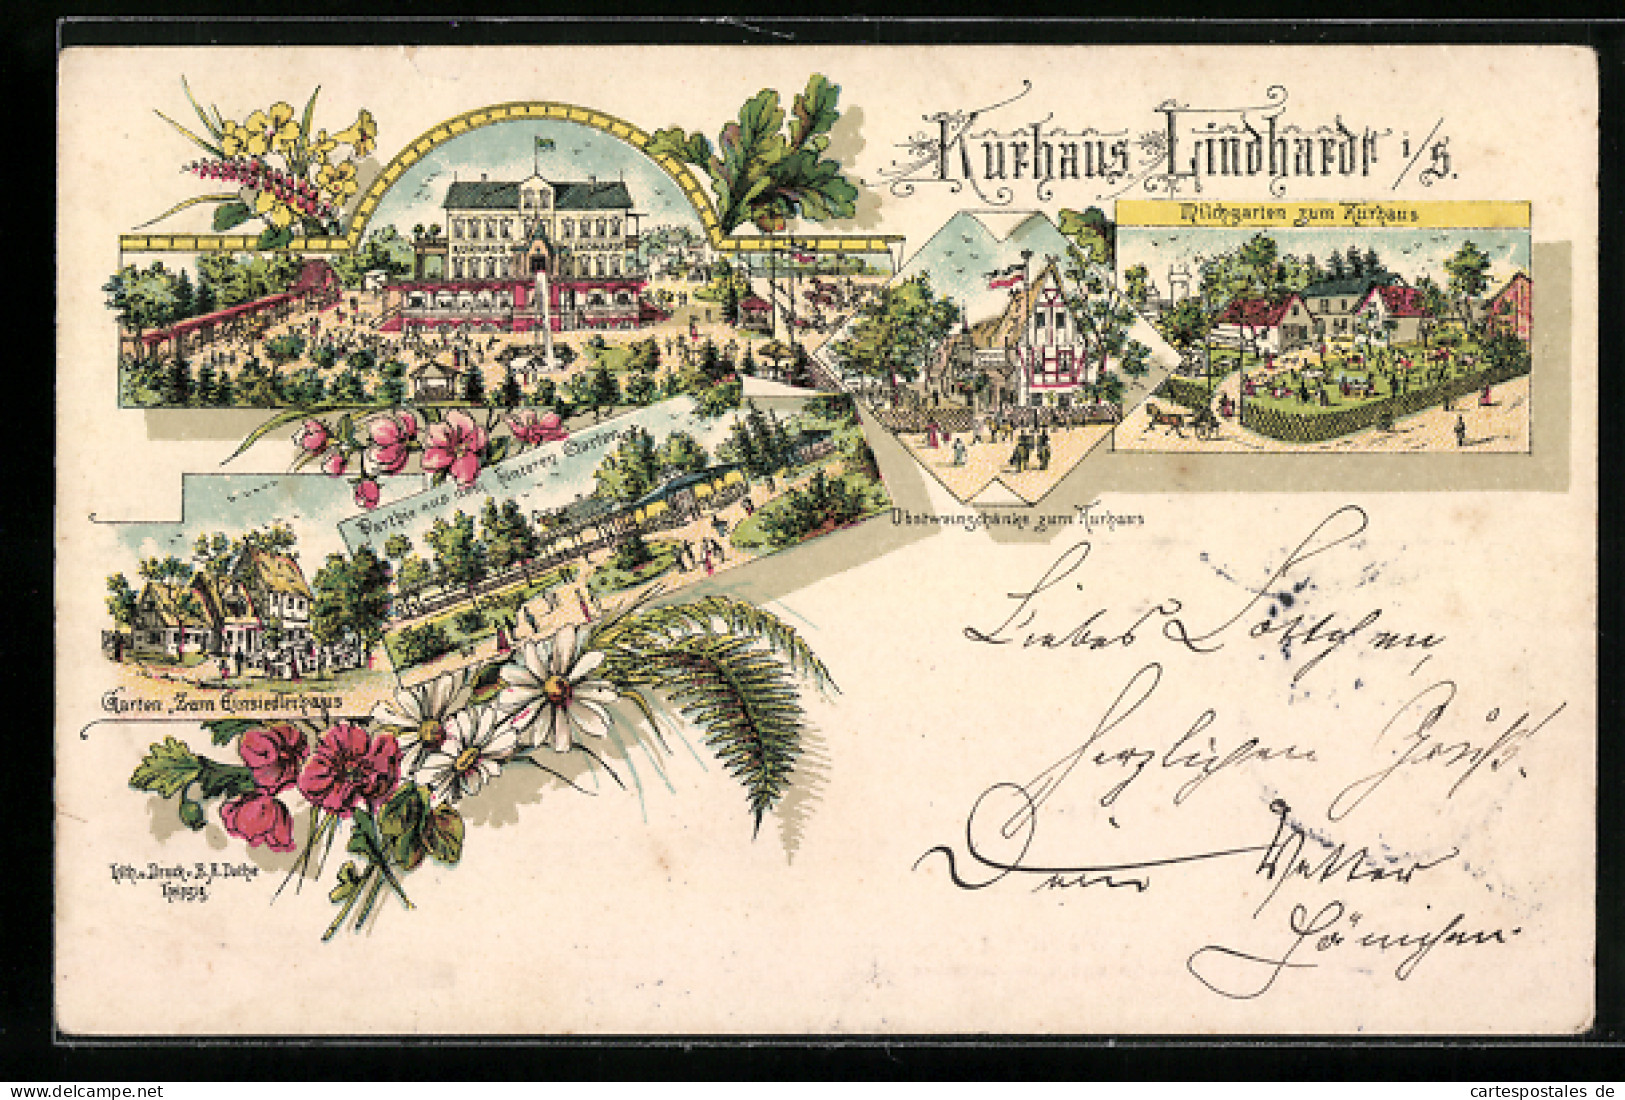 Lithographie Naunhof, Hotel Kurhaus Lindhardt, Obstweinschänke, Milchgarten  - Naunhof